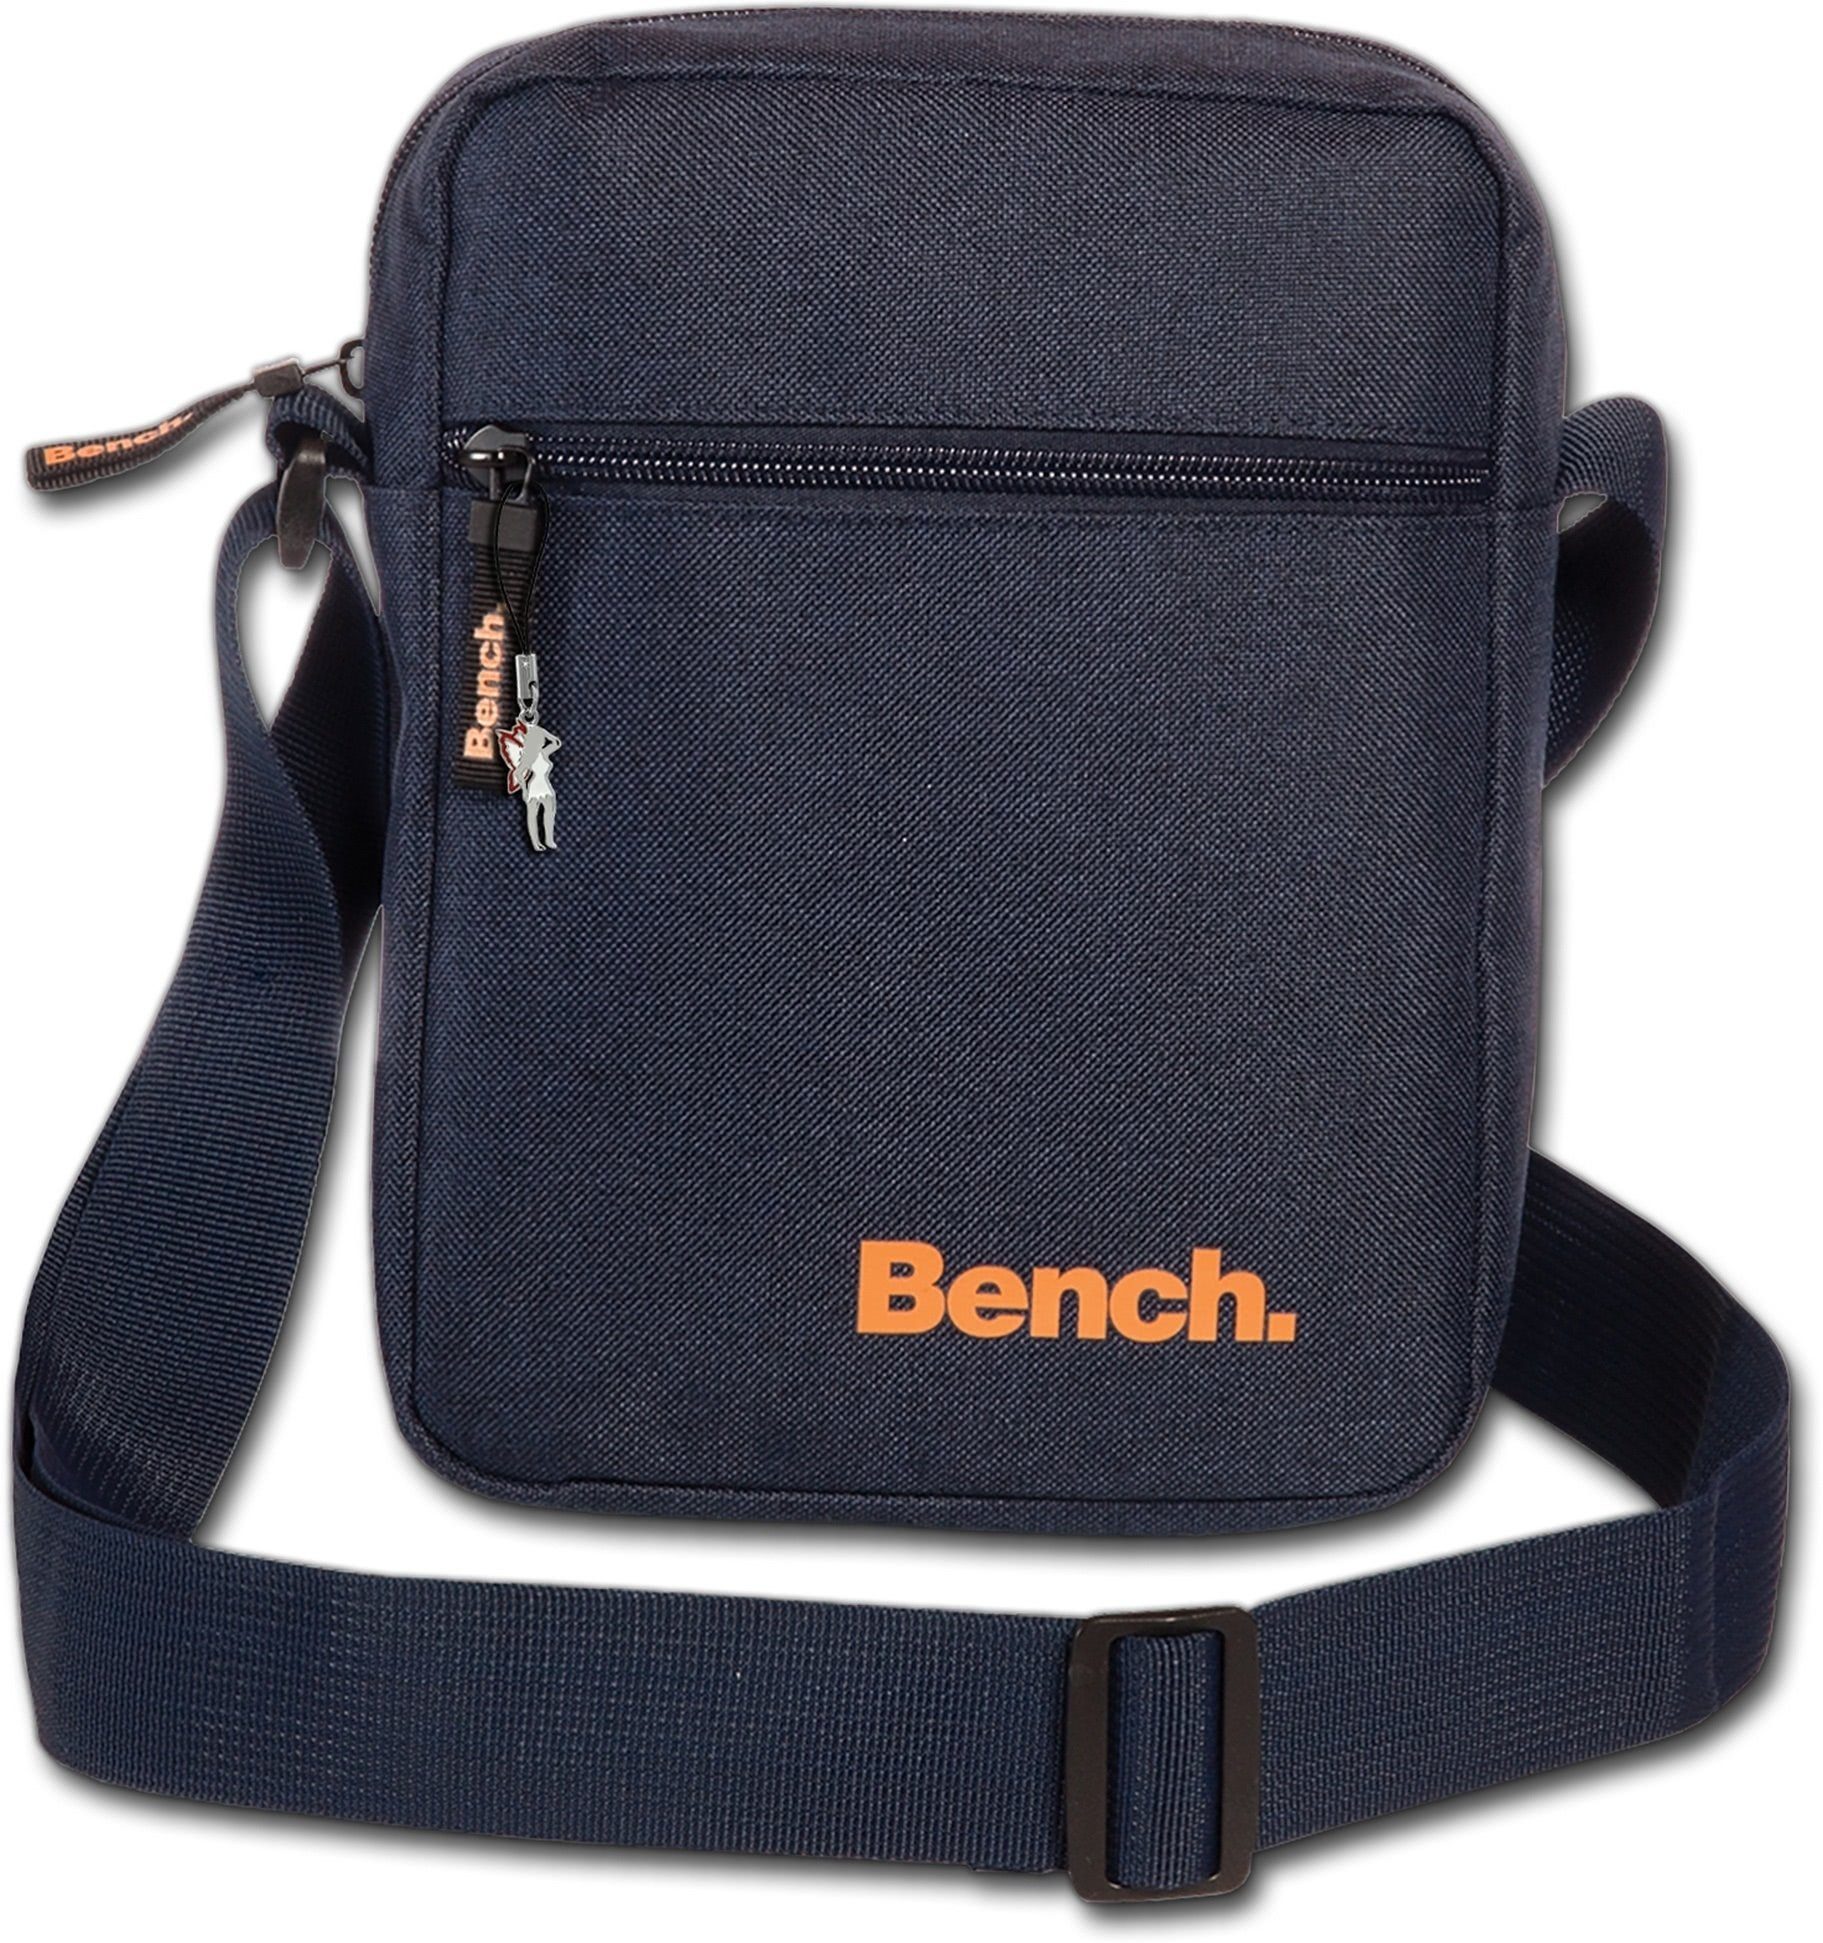 Bench. Umhängetasche Bench sportliche Umhängetasche blau, Damen, Herren,  Jugend Tasche aus Polyester, Größe ca. 17cm in blau